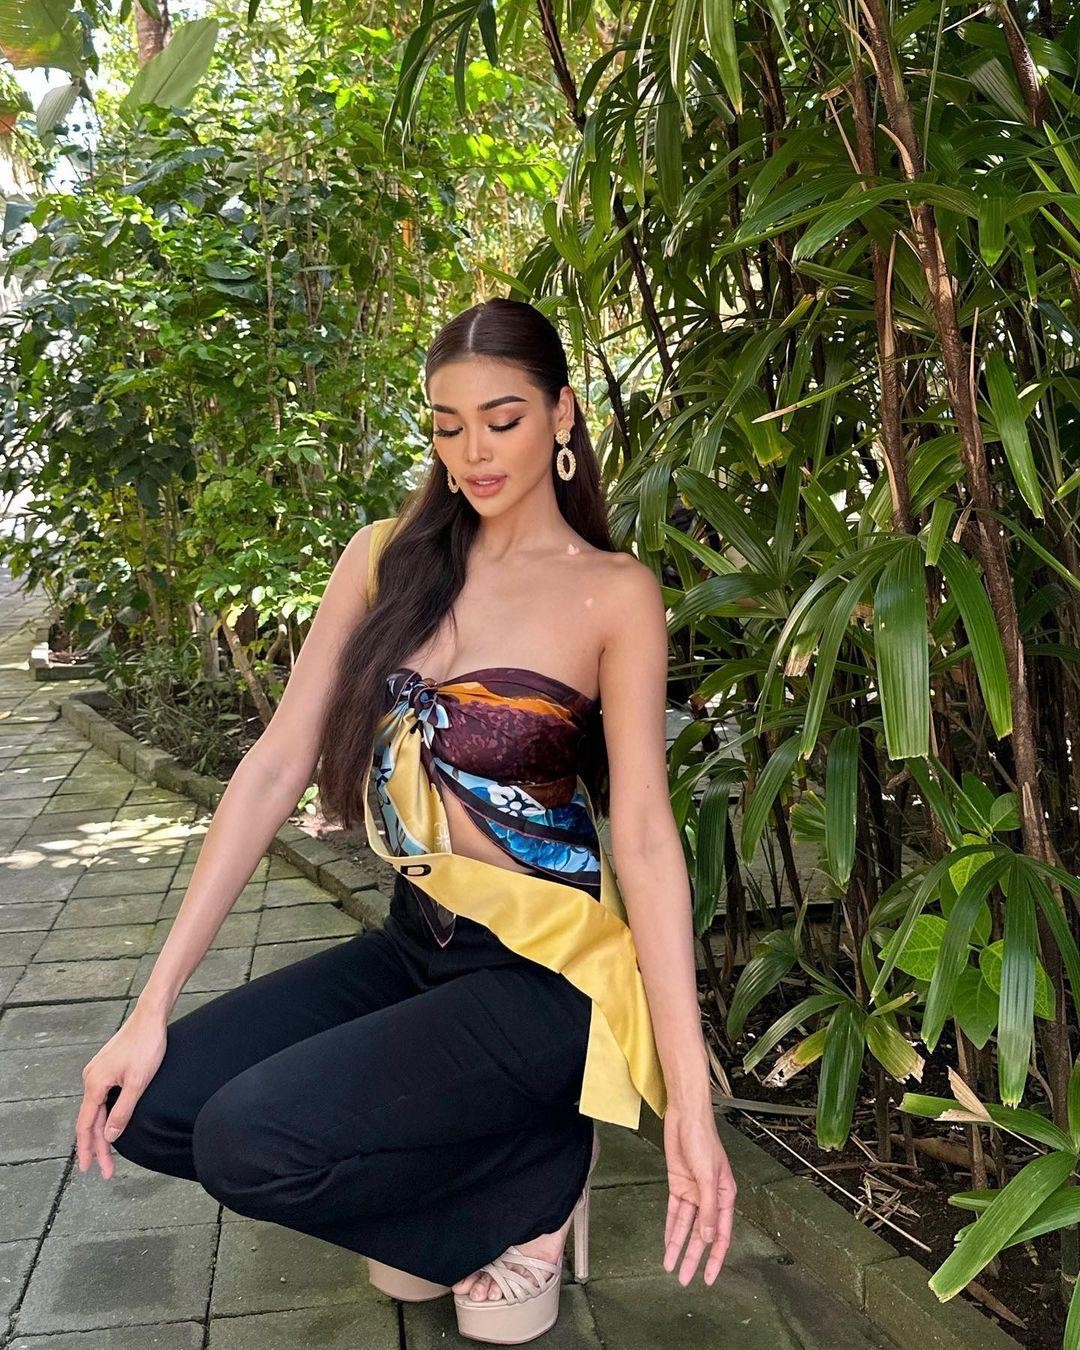 Thân hình đồng hồ cát của Hoa hậu Hòa bình Thái Lan - Ảnh 5.